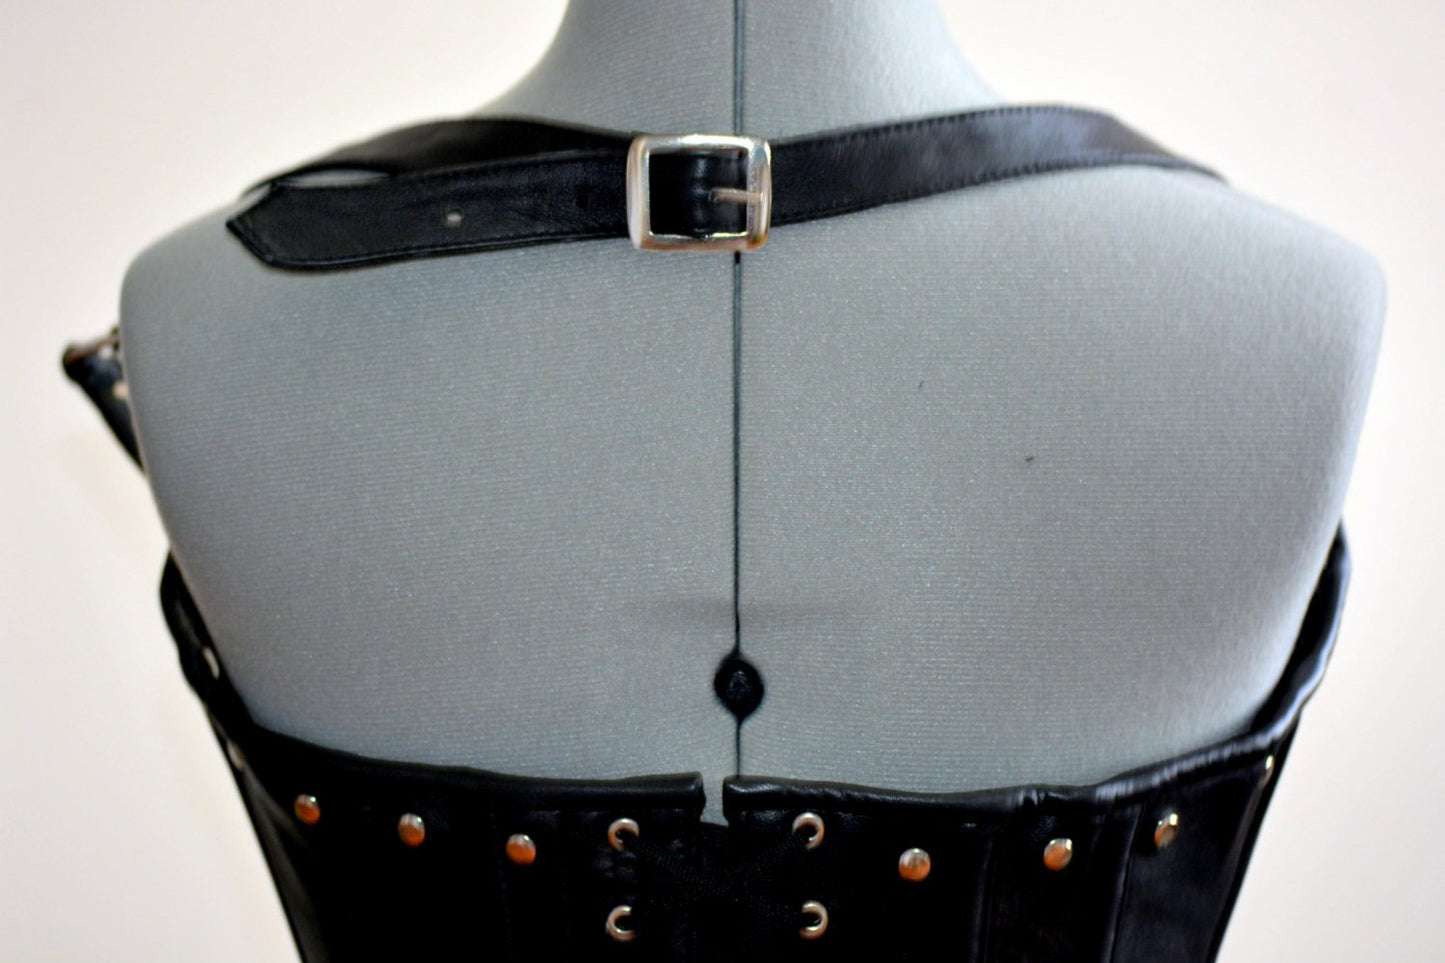 Authentic cotton corset: vintage pink cotton overbust corset